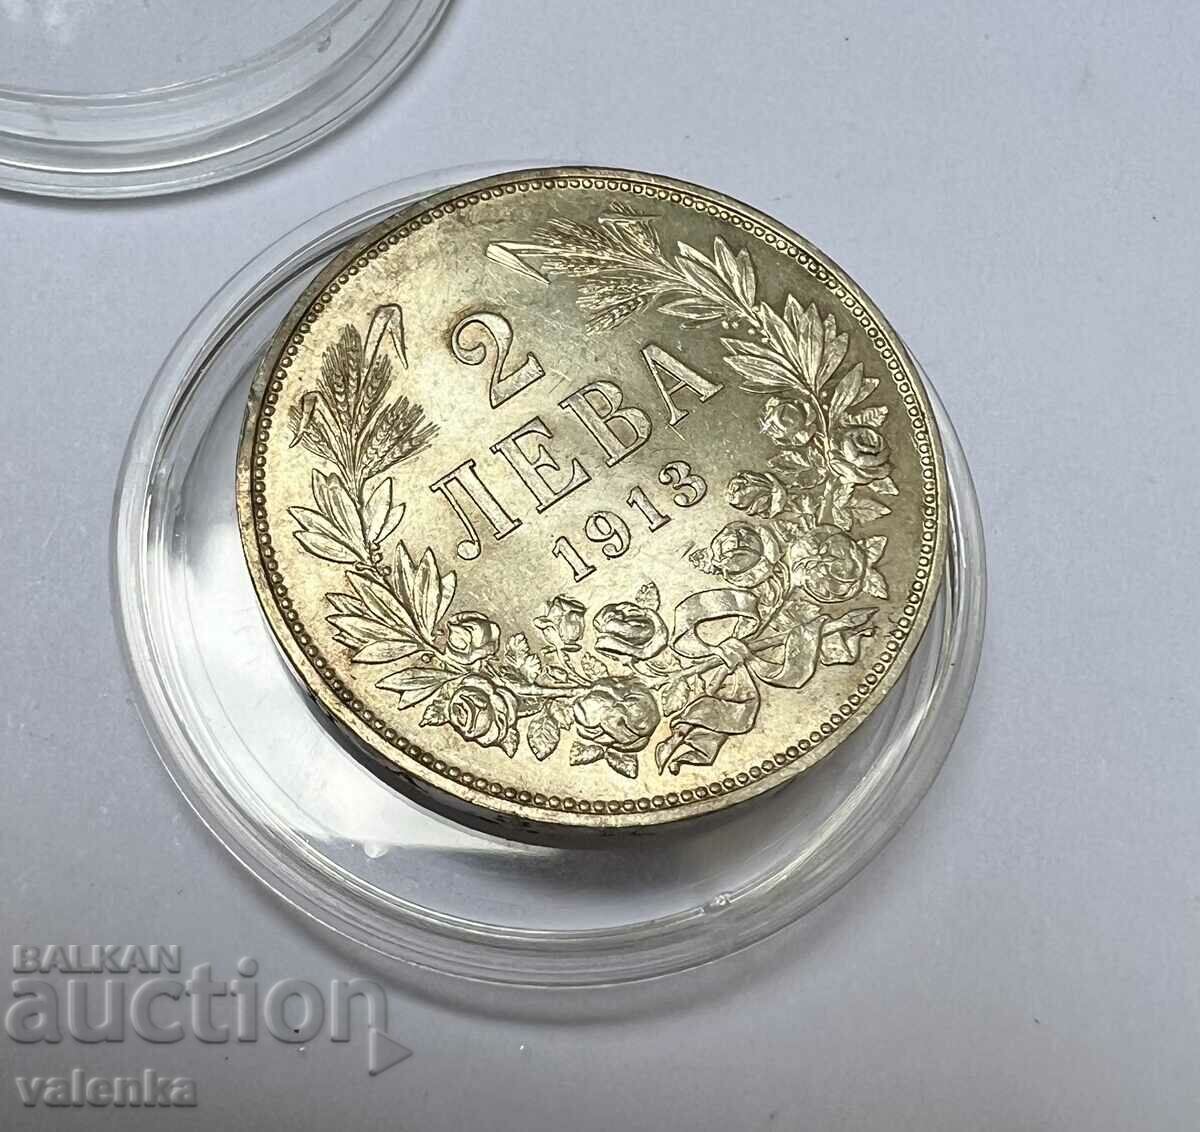 TOP GRADE - silver coin 2 BGN 1913 Ferdinand I